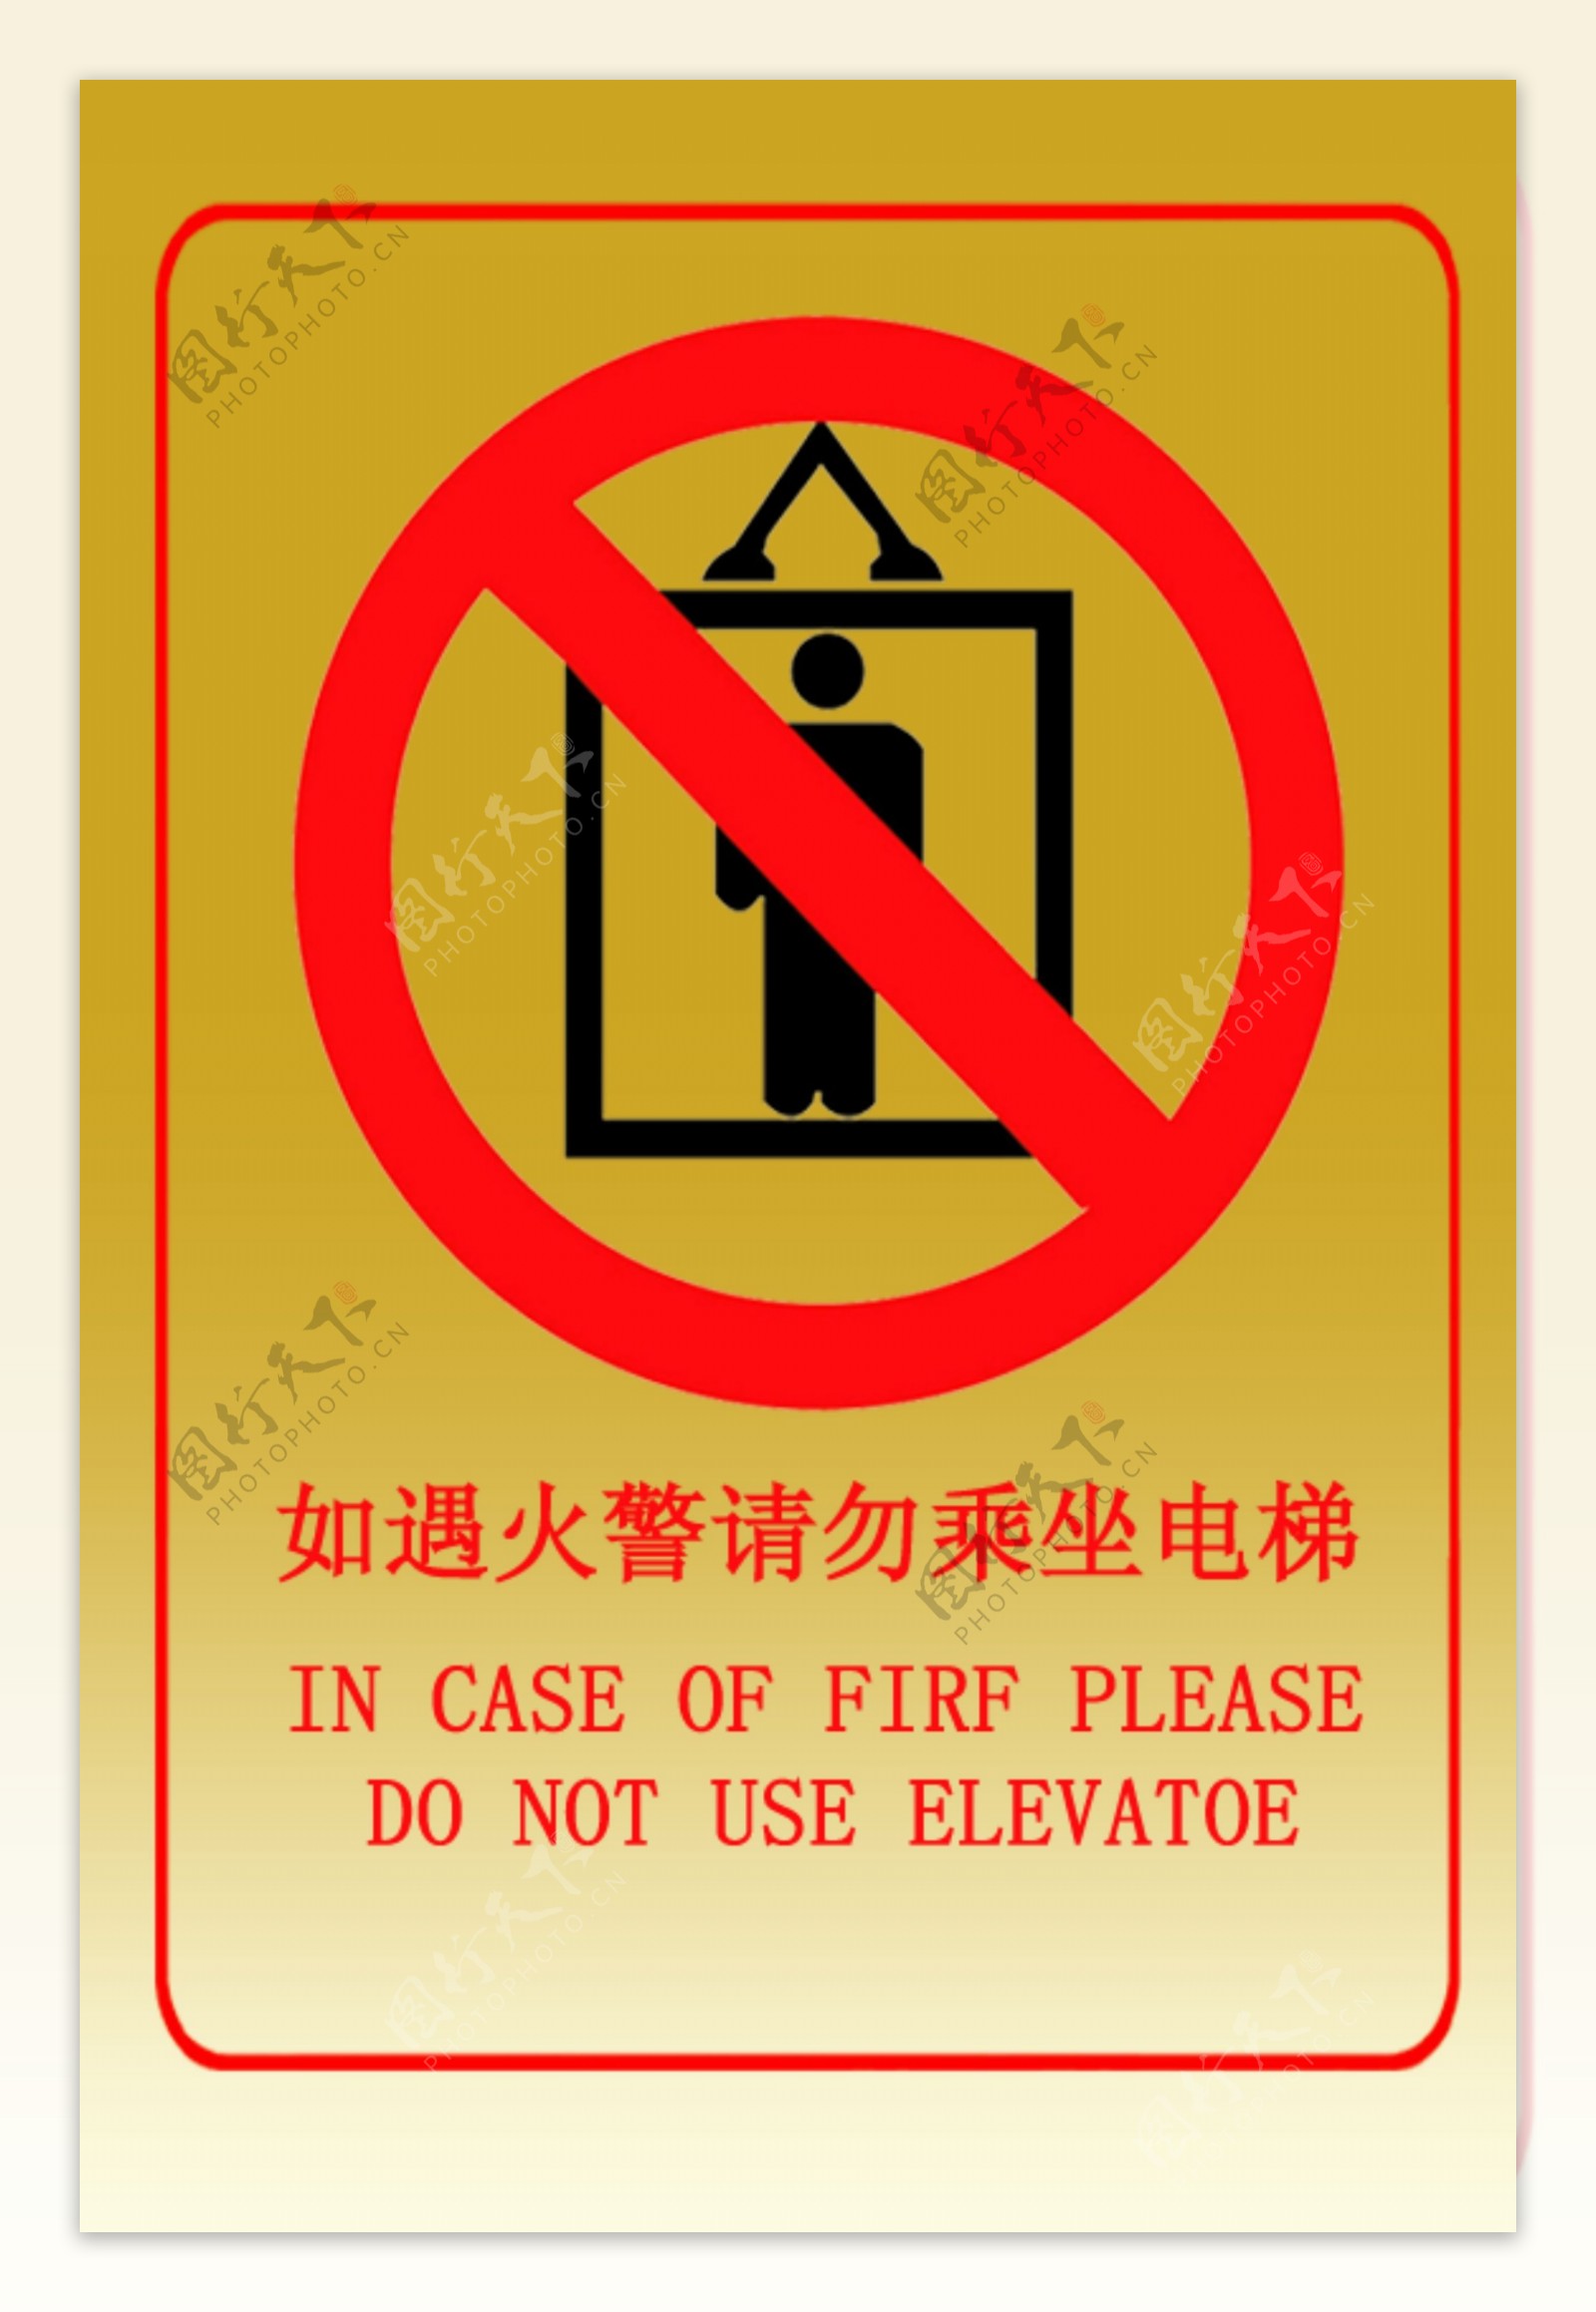 火灾时电梯禁用标志图片